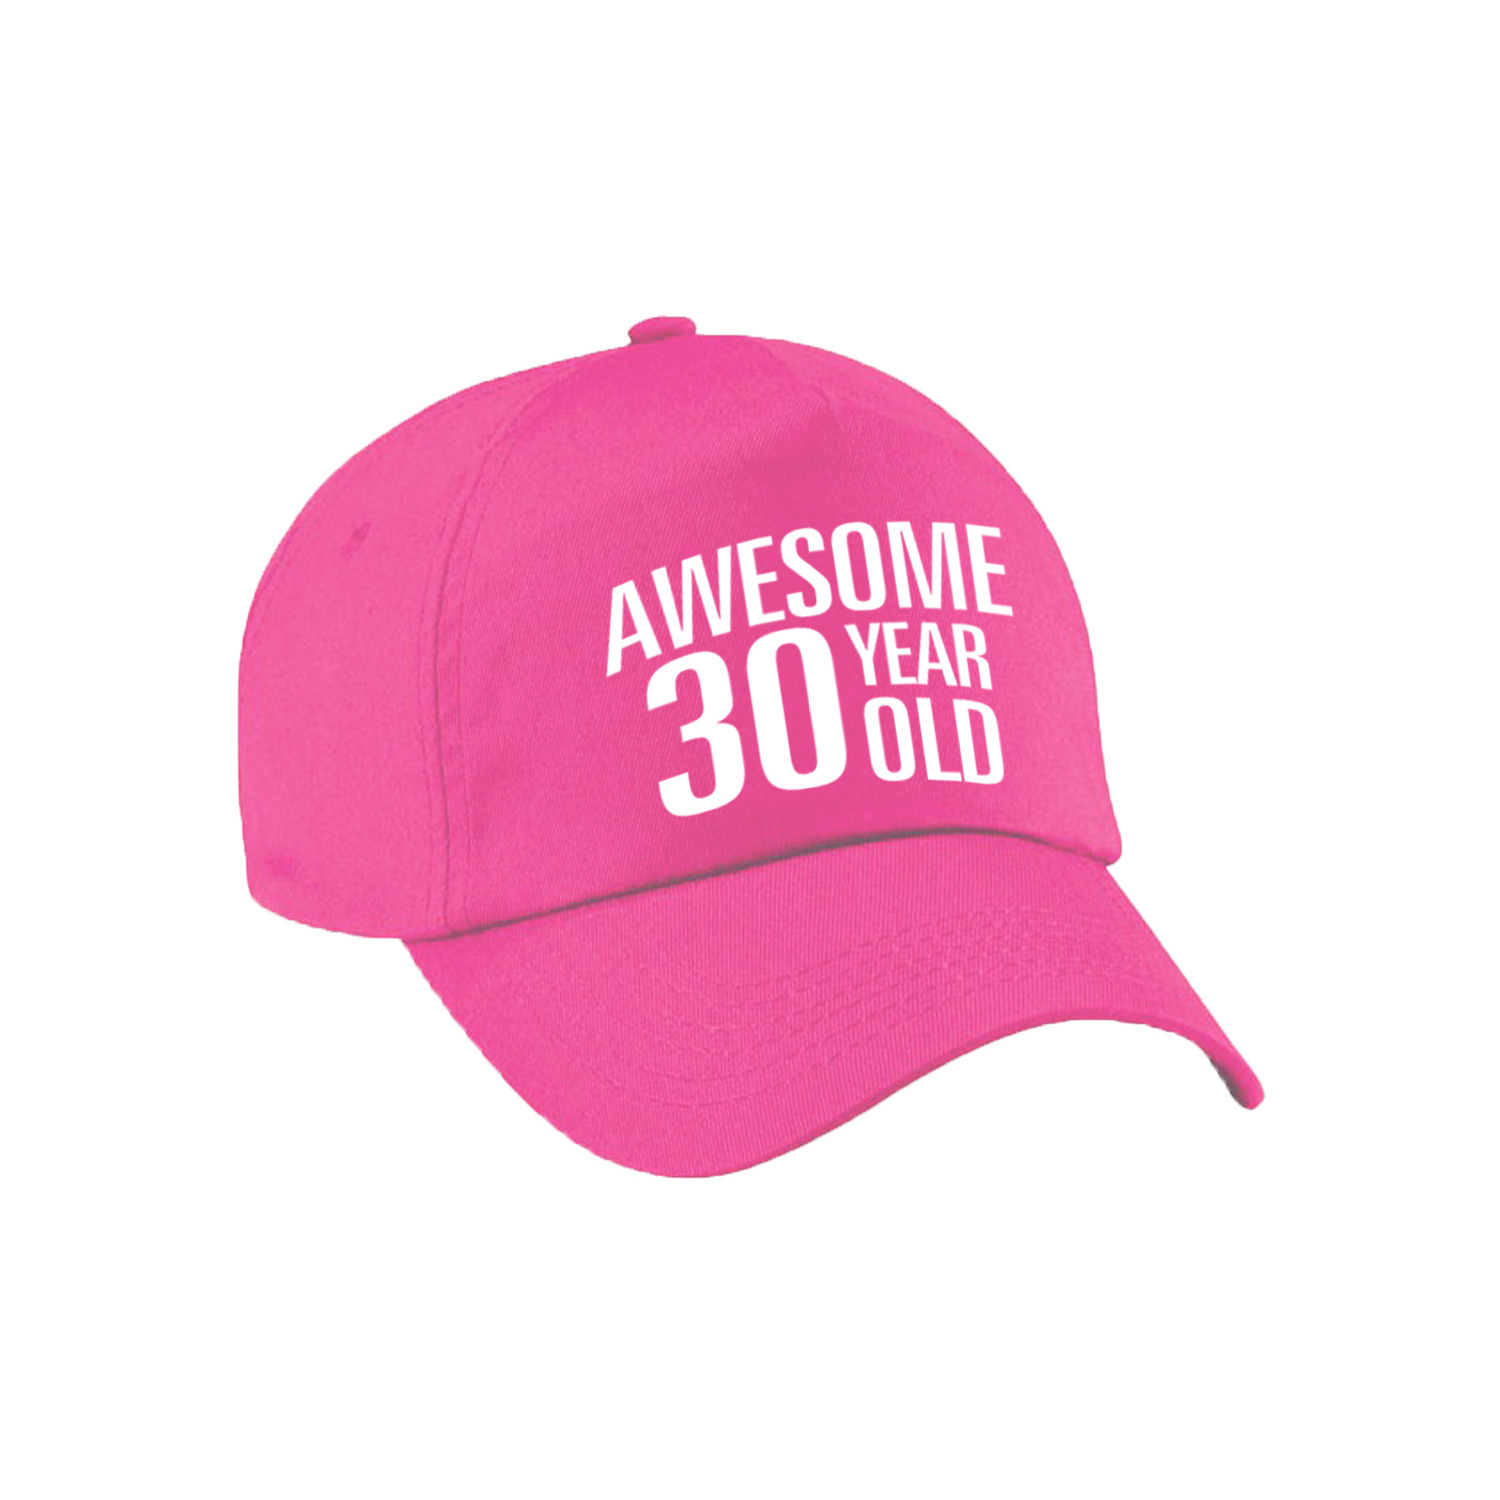 Awesome 30 year old verjaardag pet / cap roze voor dames en heren